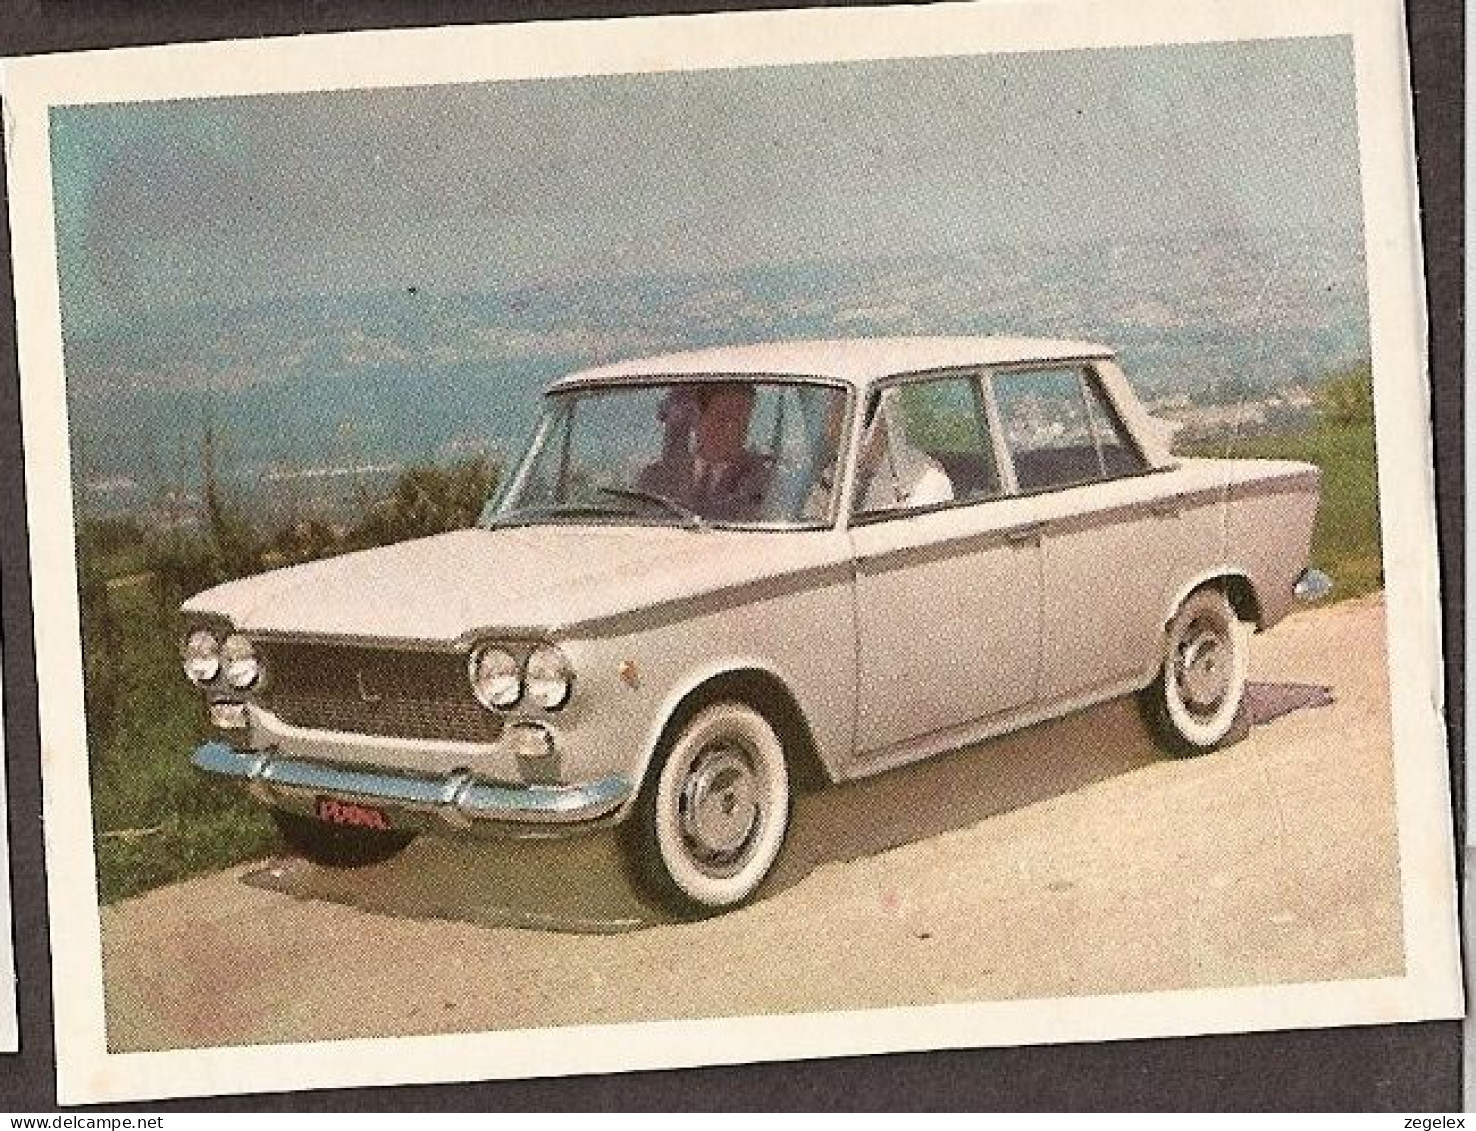 Fiat 1300 - Automobile, Voiture, Oldtimer, Car. Voir Description, See  The Description. - Auto's